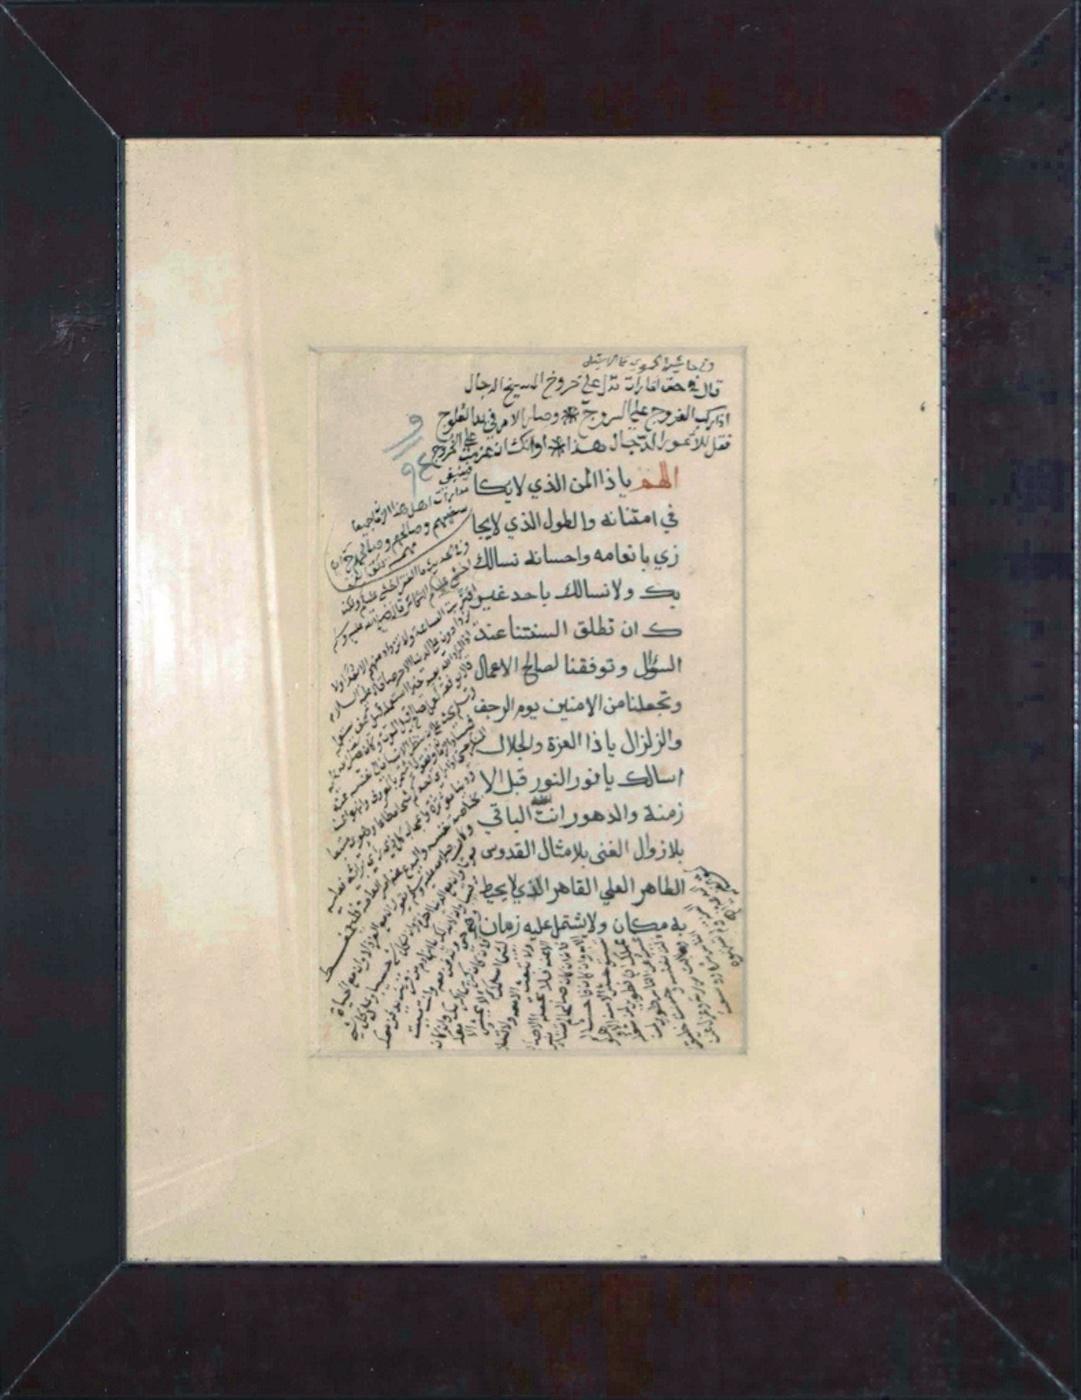 Arabische Kalligraphie des Betens ist ein kostbares Manuskript, das islamische heilige Verse in einem alten kalligraphischen Stil wiedergibt.

Eine Seite, einseitig, in arabischer Sprache, das Originalblatt ( cm 17x 11) ist in ausgezeichnetem